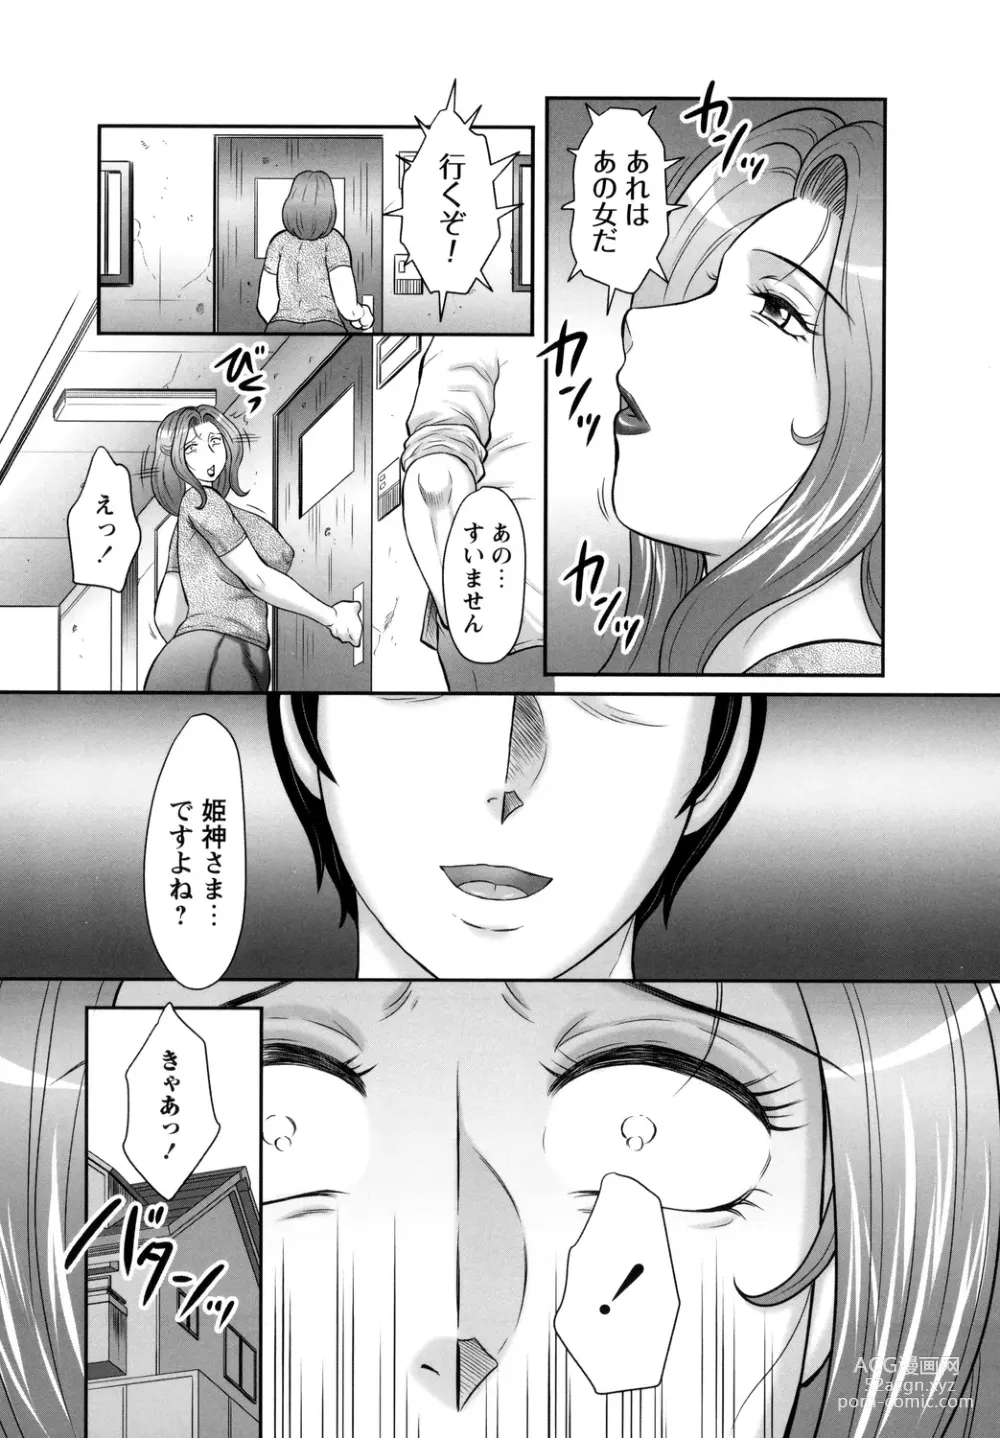 Page 11 of manga Midaragami Seinaru Jukujo ga Mesubuta Ika no Nanika ni Ochiru made